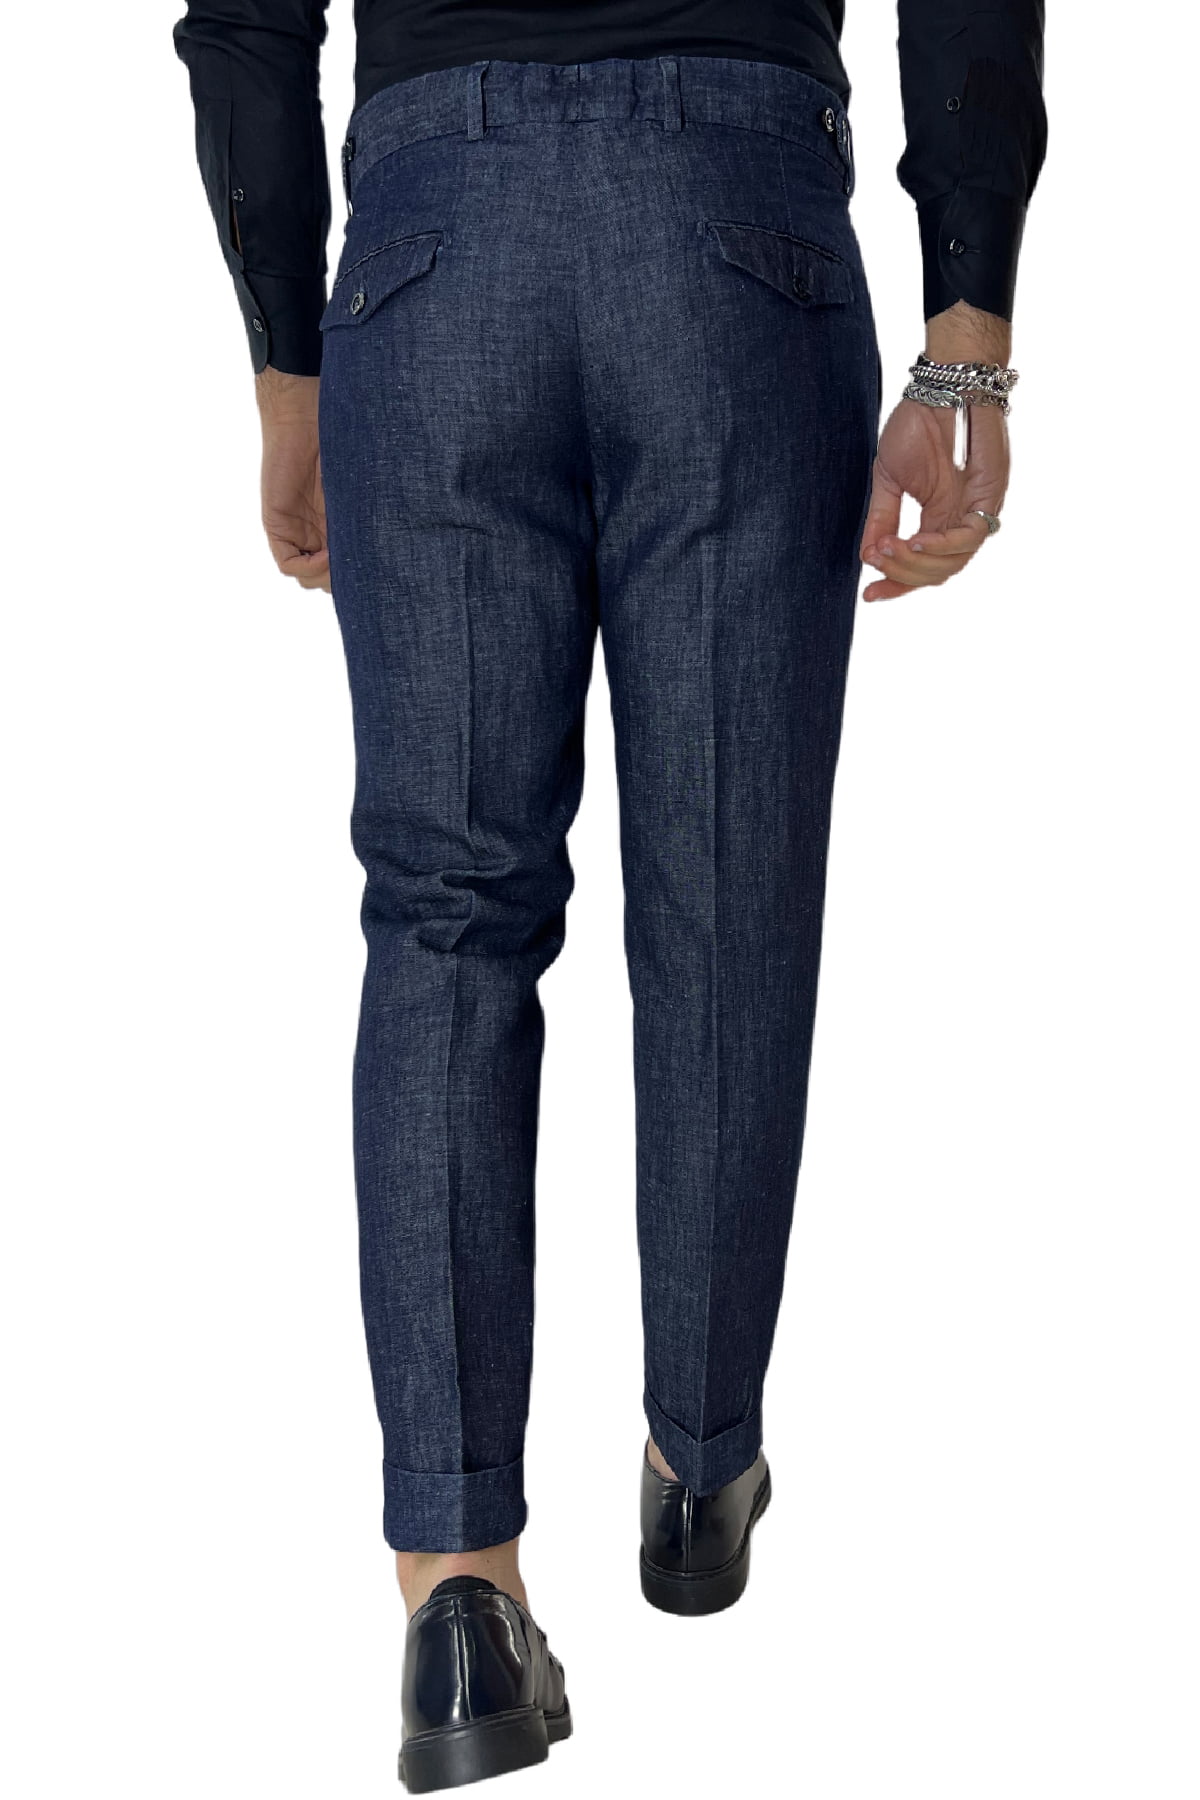 Pantalone uomo lino blu con doppia pence tasca america made in italy